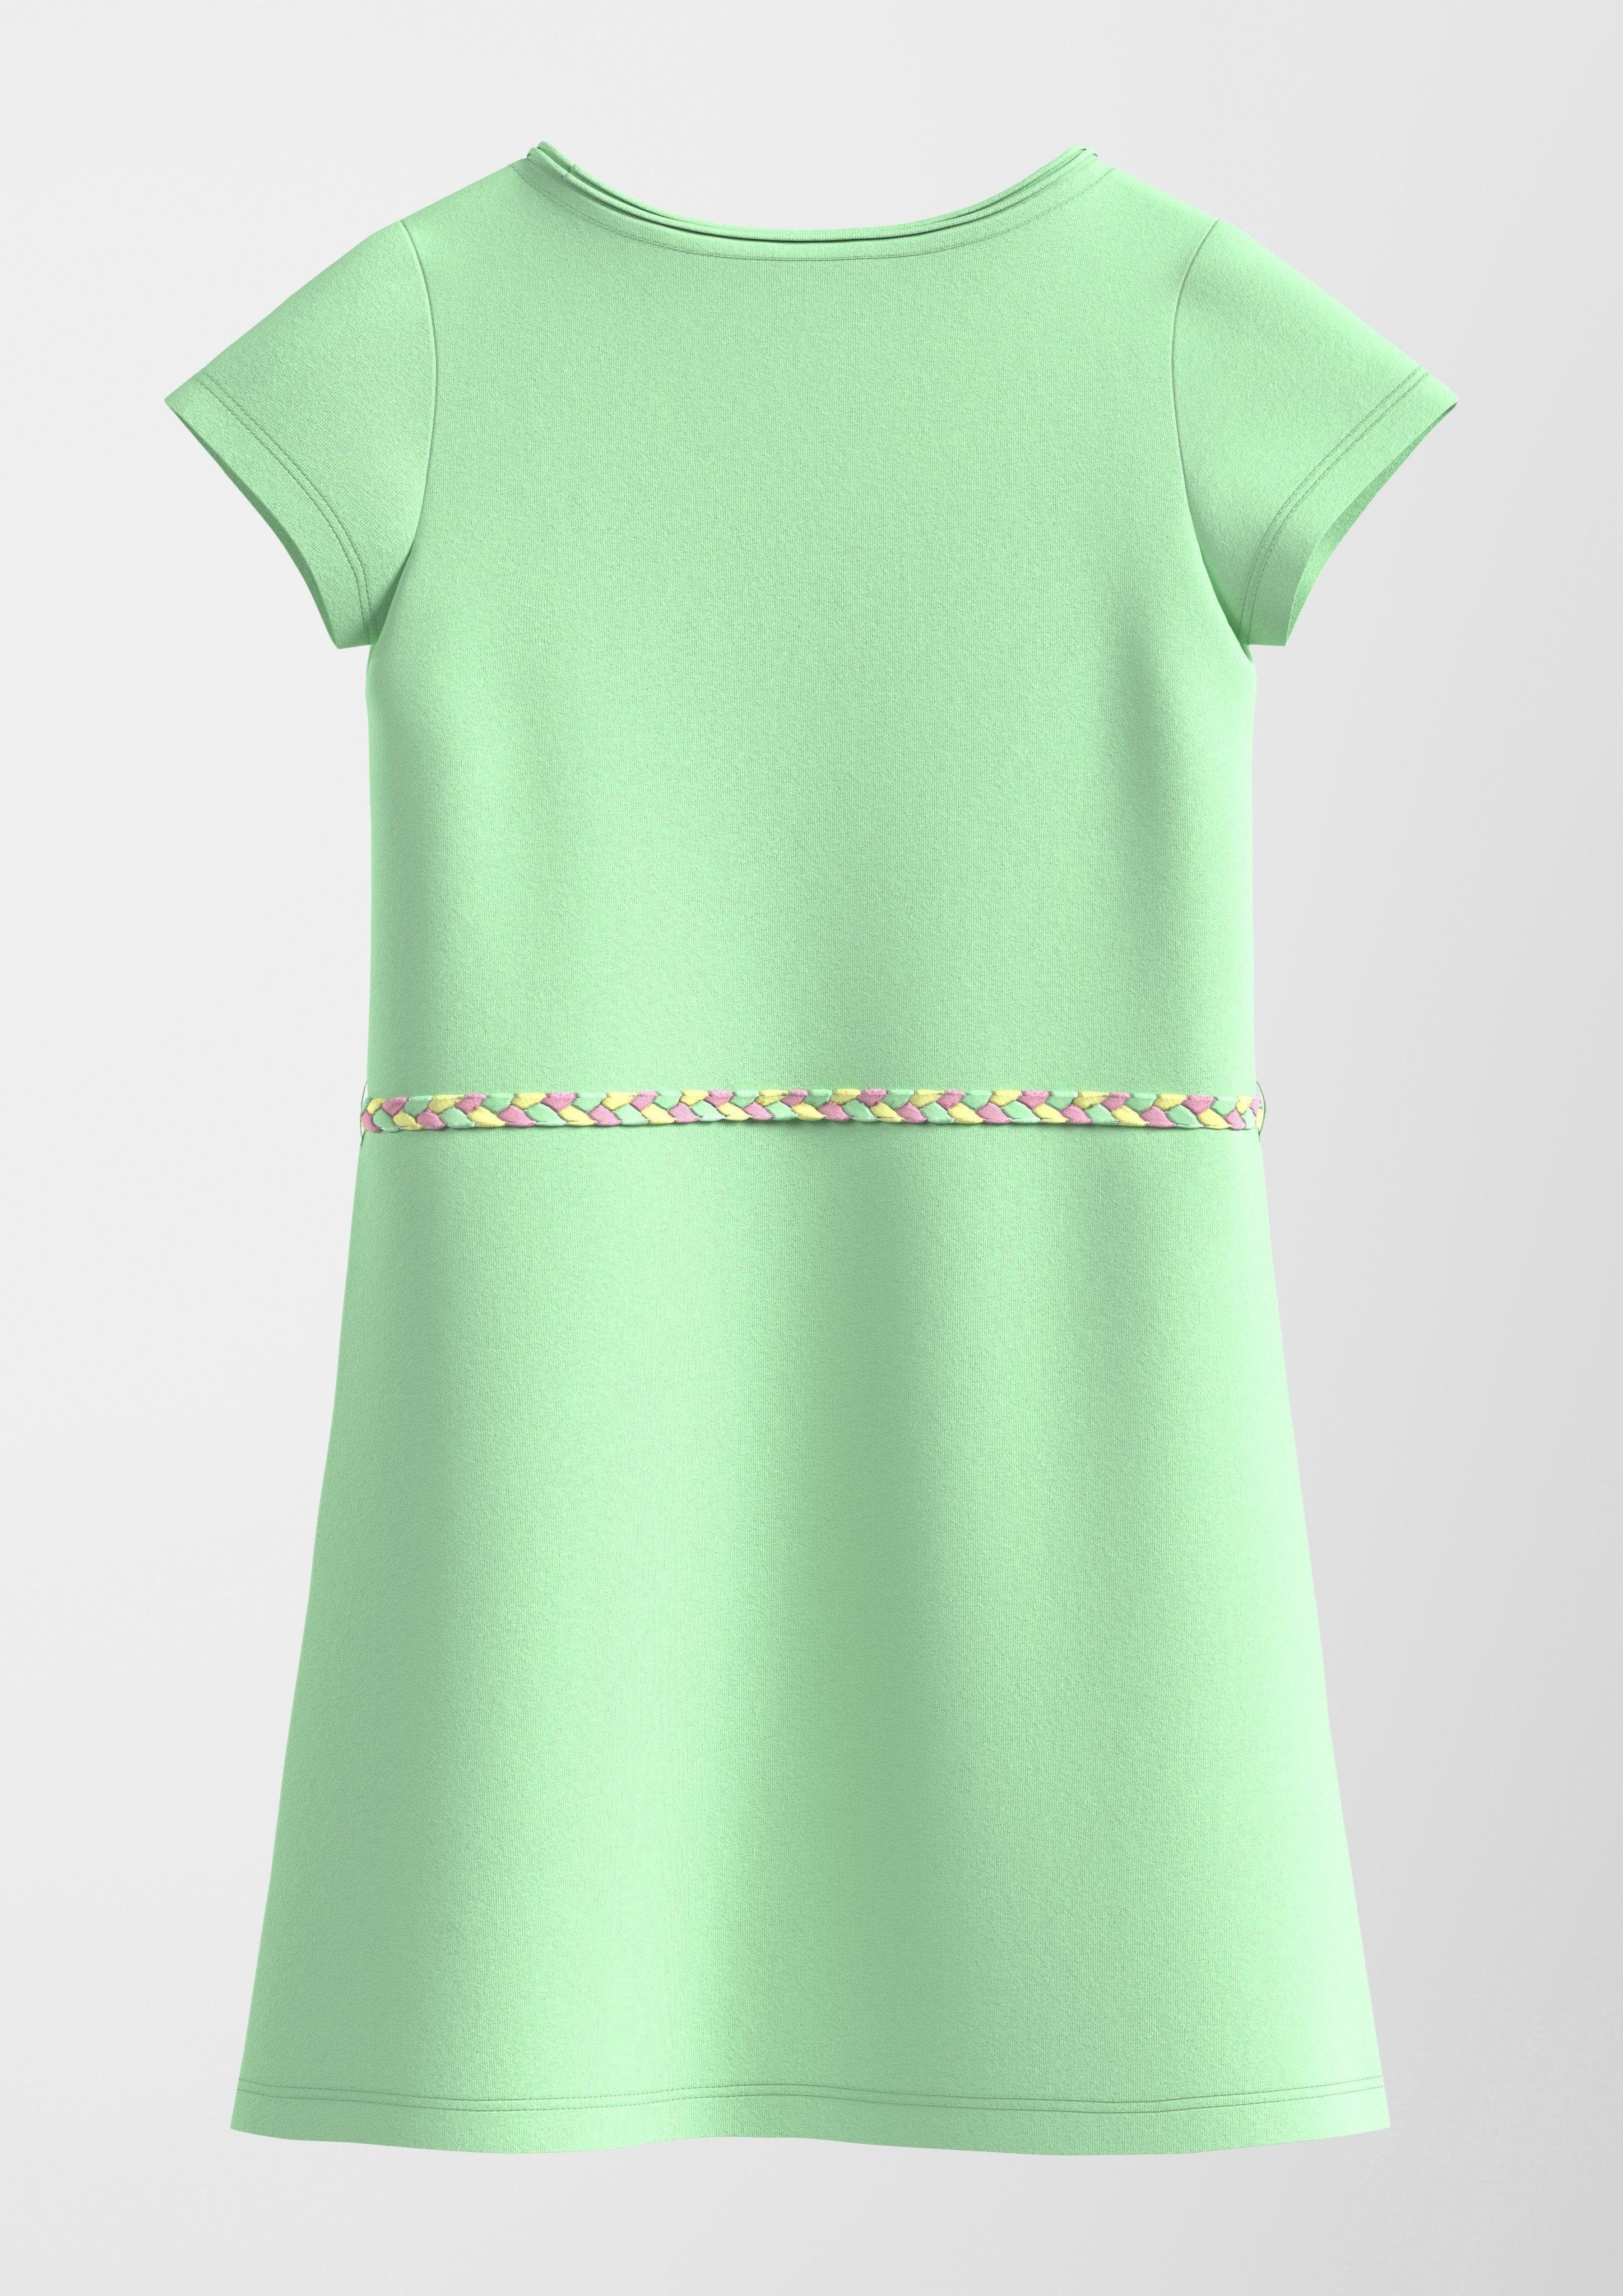 Glitzer-Artwork Glitzer Kurzes Artwork, s.Oliver Minikleid Kleid mit hellgrün